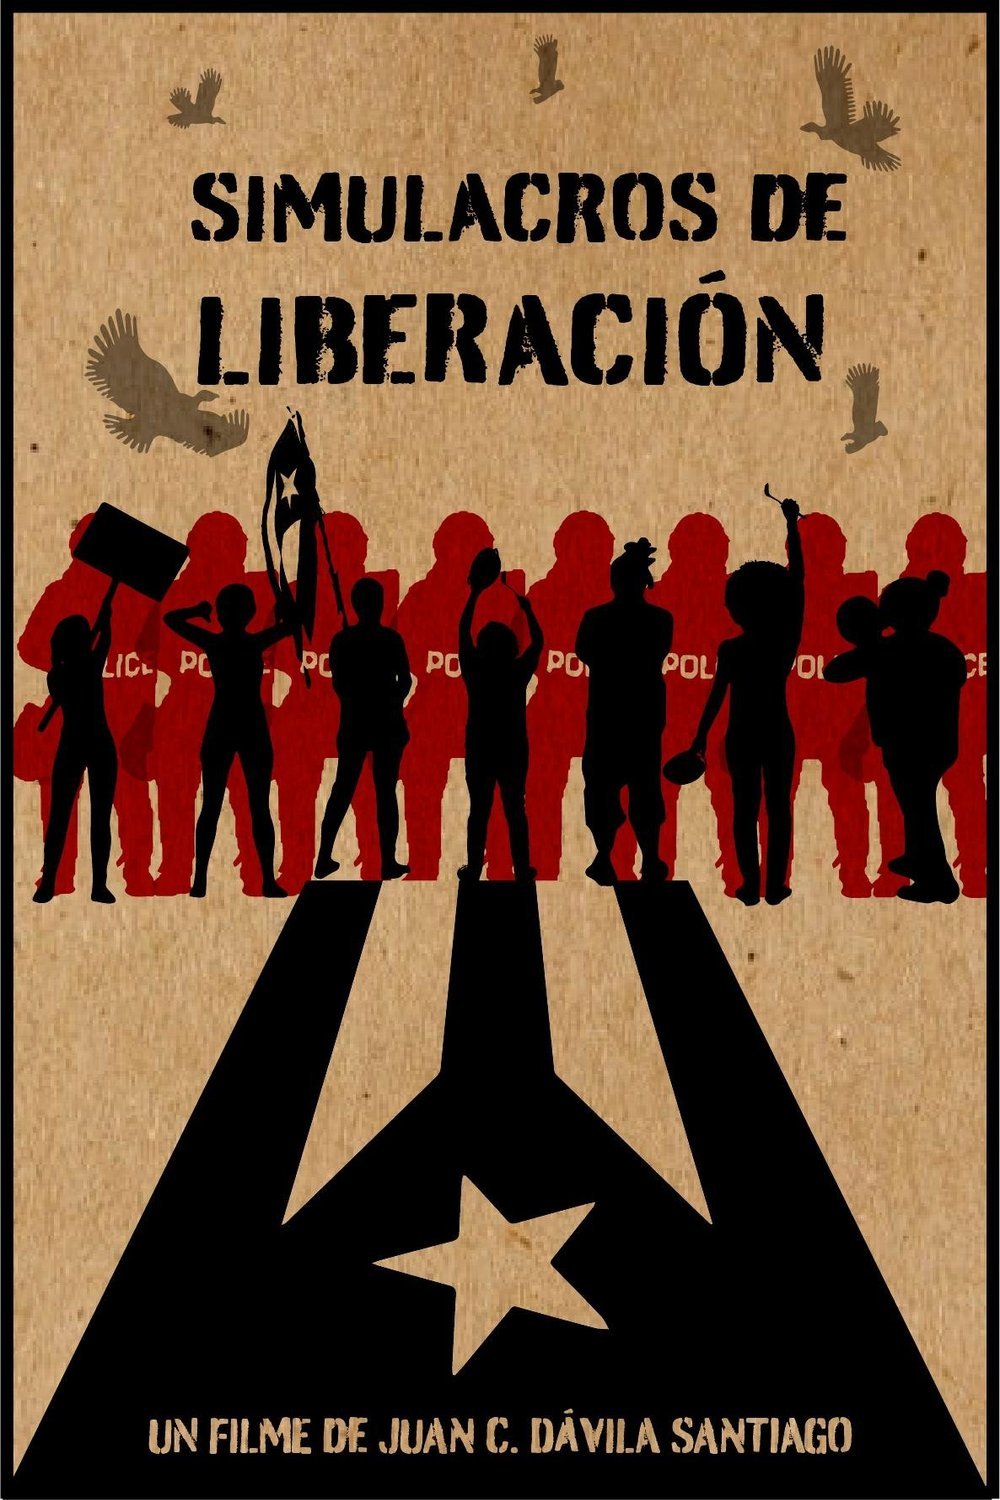 L'affiche originale du film Simulacros de liberación en espagnol